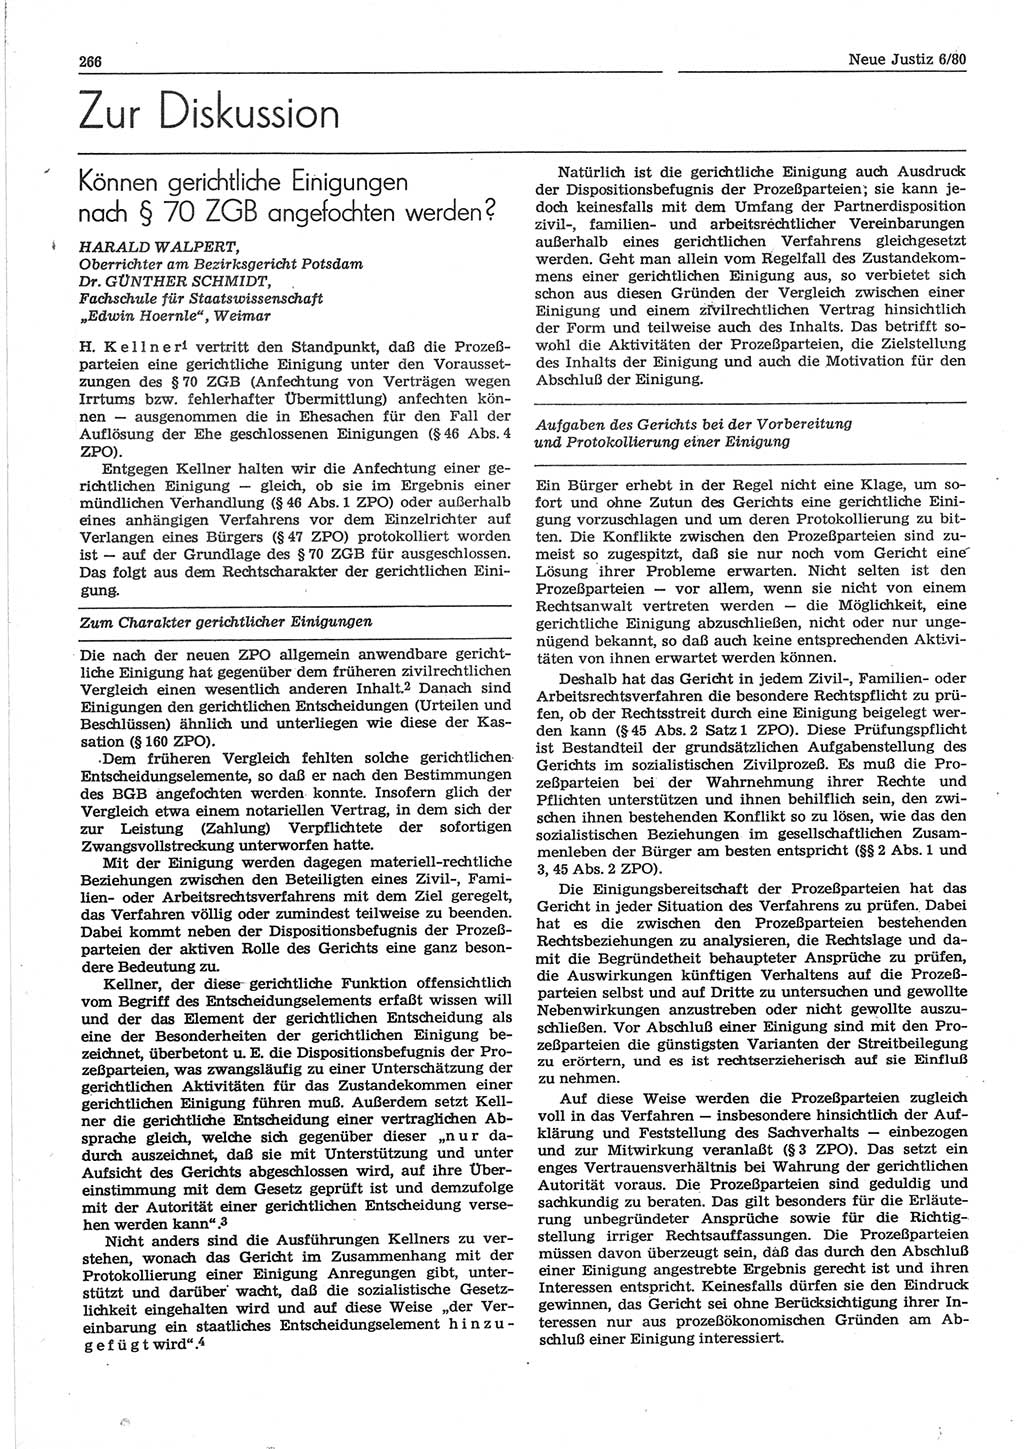 Neue Justiz (NJ), Zeitschrift für sozialistisches Recht und Gesetzlichkeit [Deutsche Demokratische Republik (DDR)], 34. Jahrgang 1980, Seite 266 (NJ DDR 1980, S. 266)